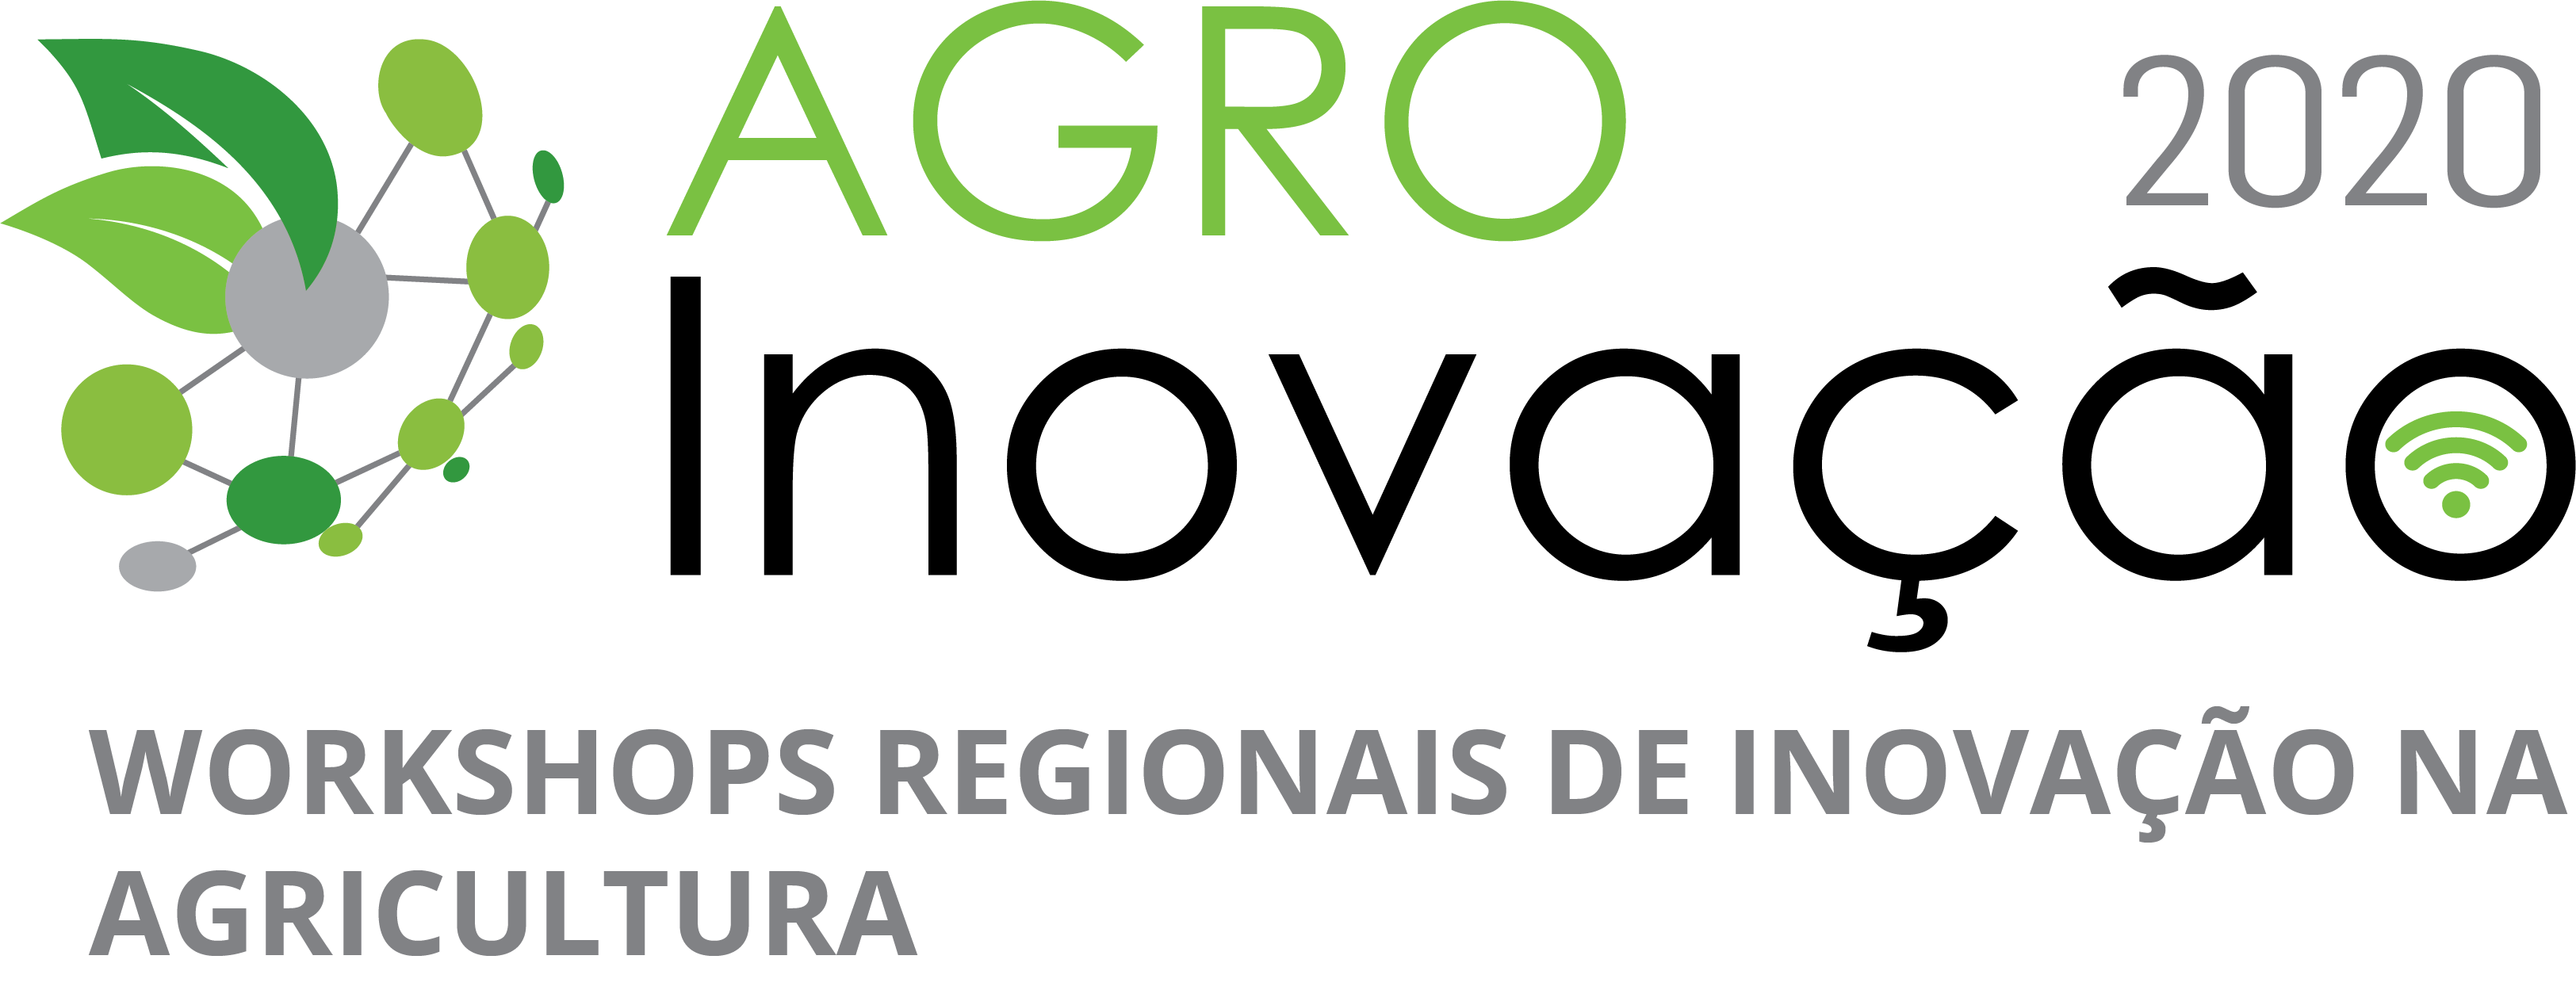 logo AGRO INOVACAO 2020